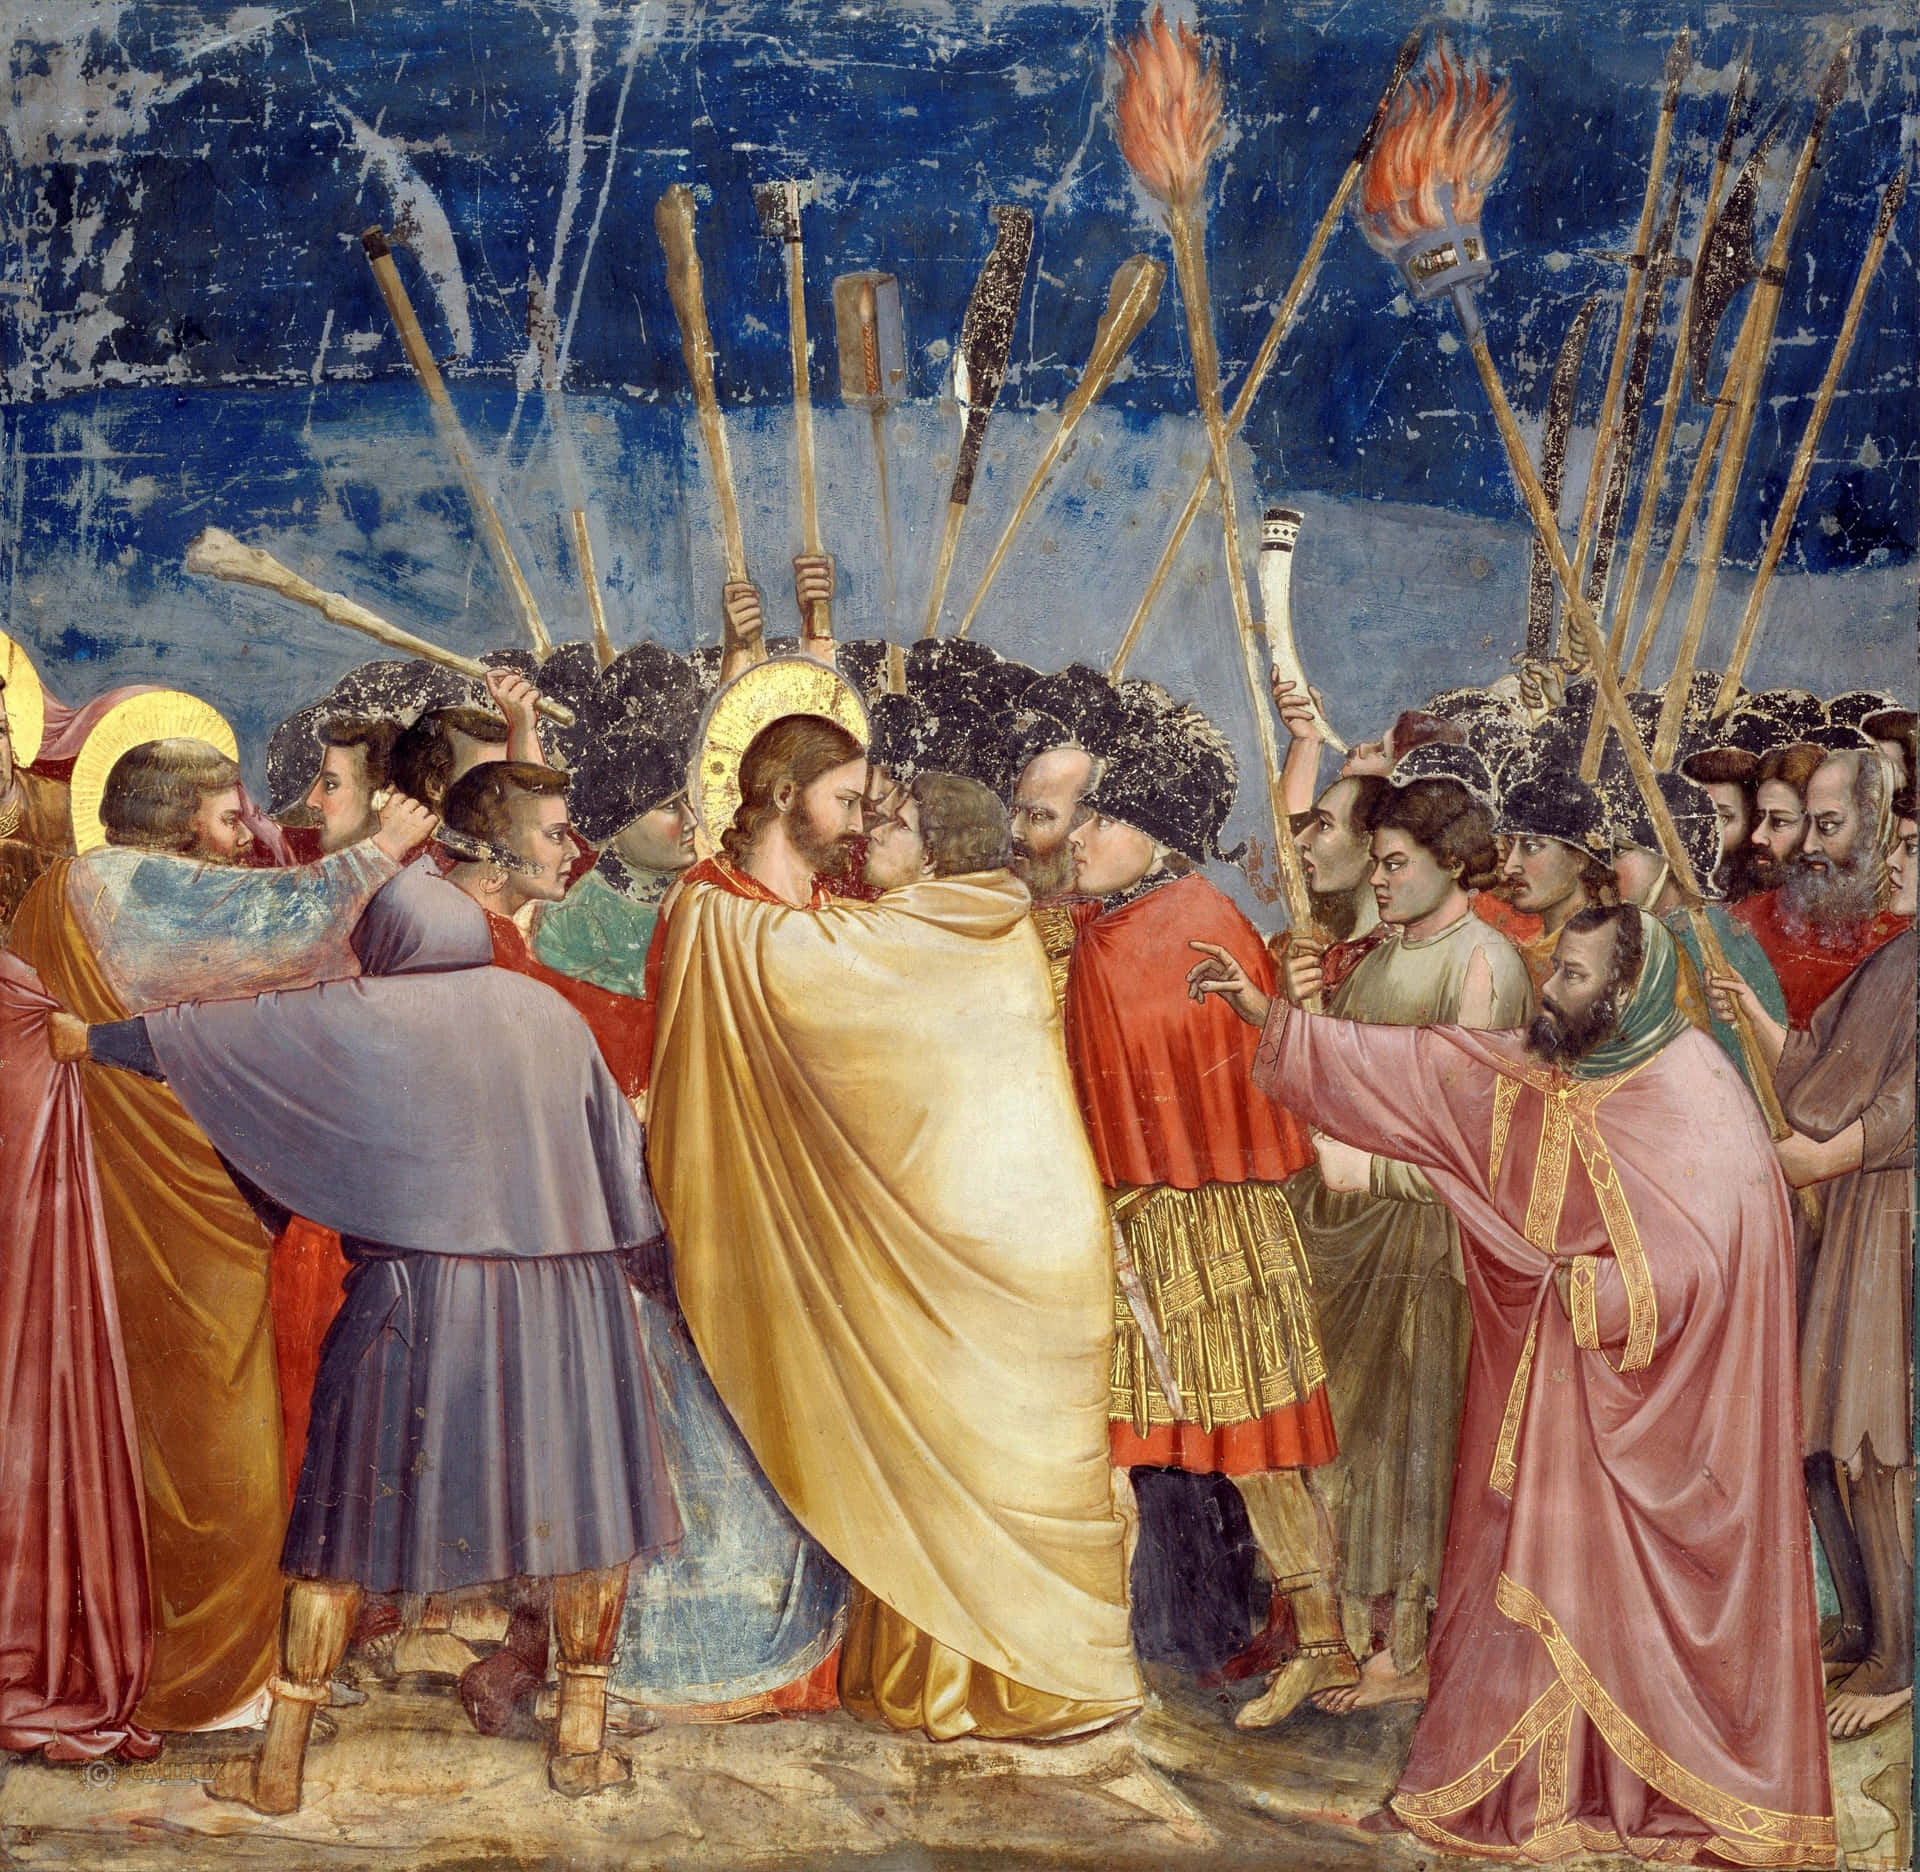 Renaissance Painting of a Royal Banquet